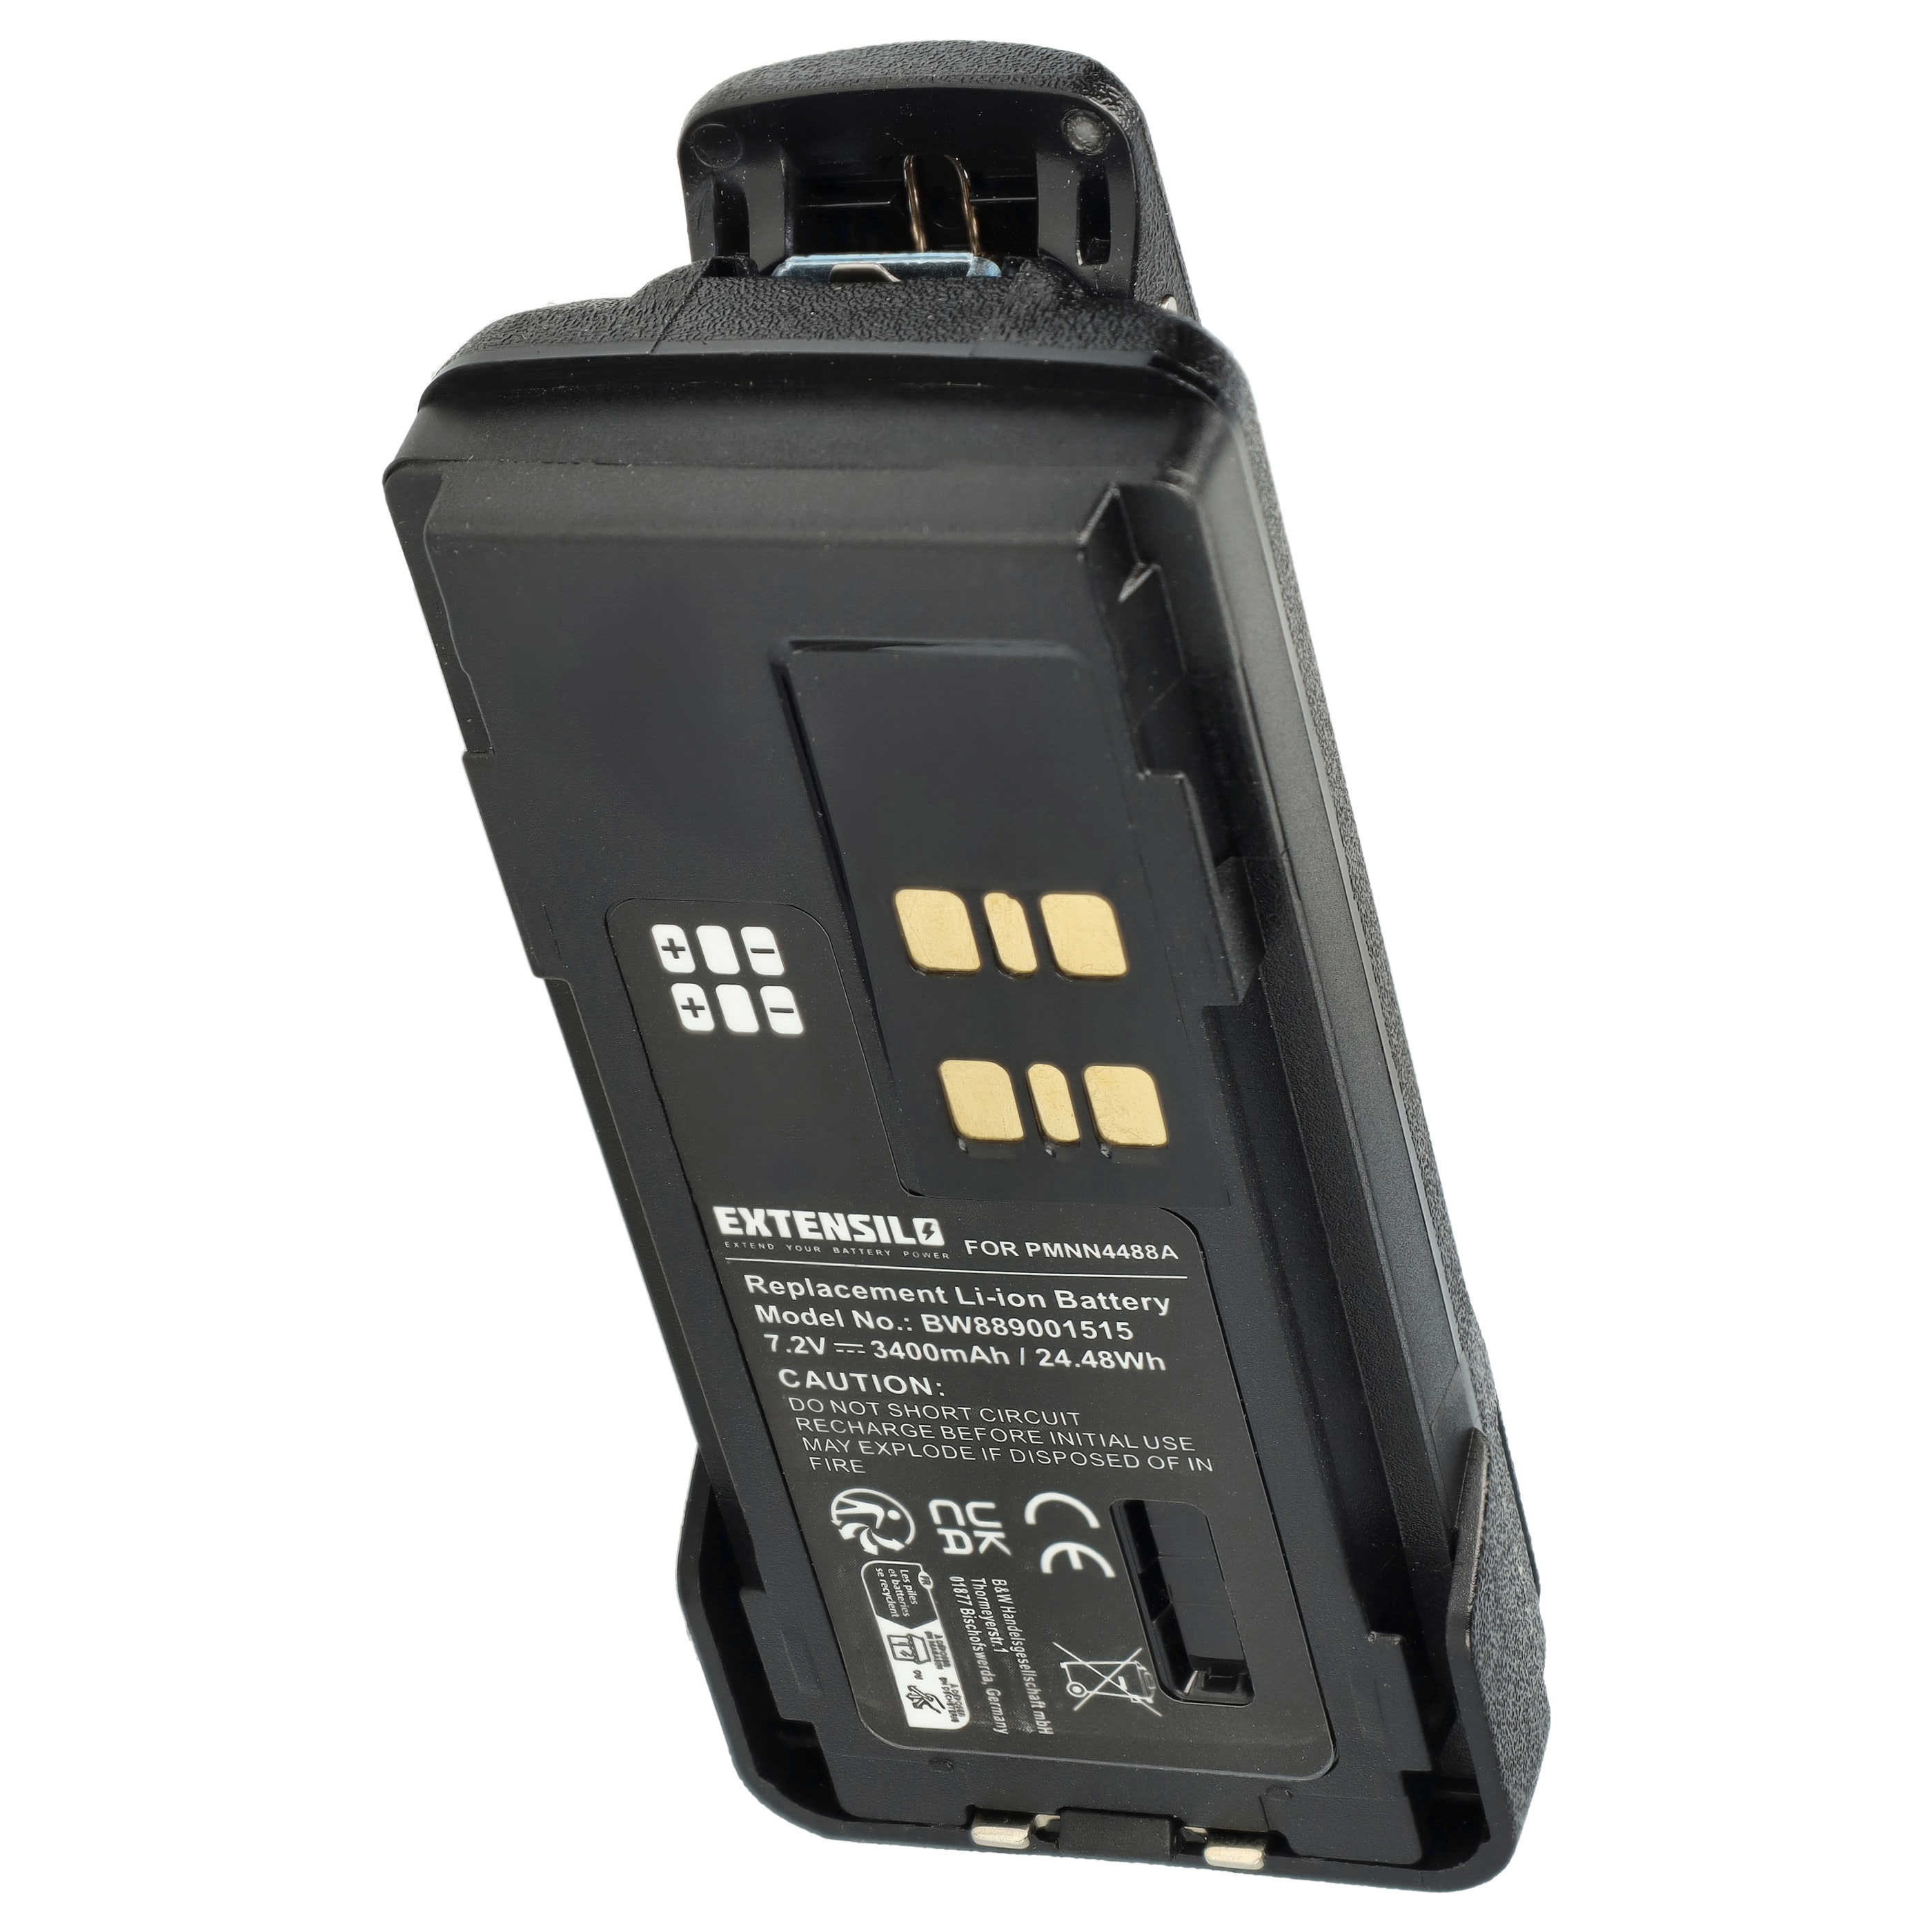 EXTENSILO batéria ako PMNN4488a pre Motorola DP2400 a ďalšie 7,2V, Li-Ion, 3400m